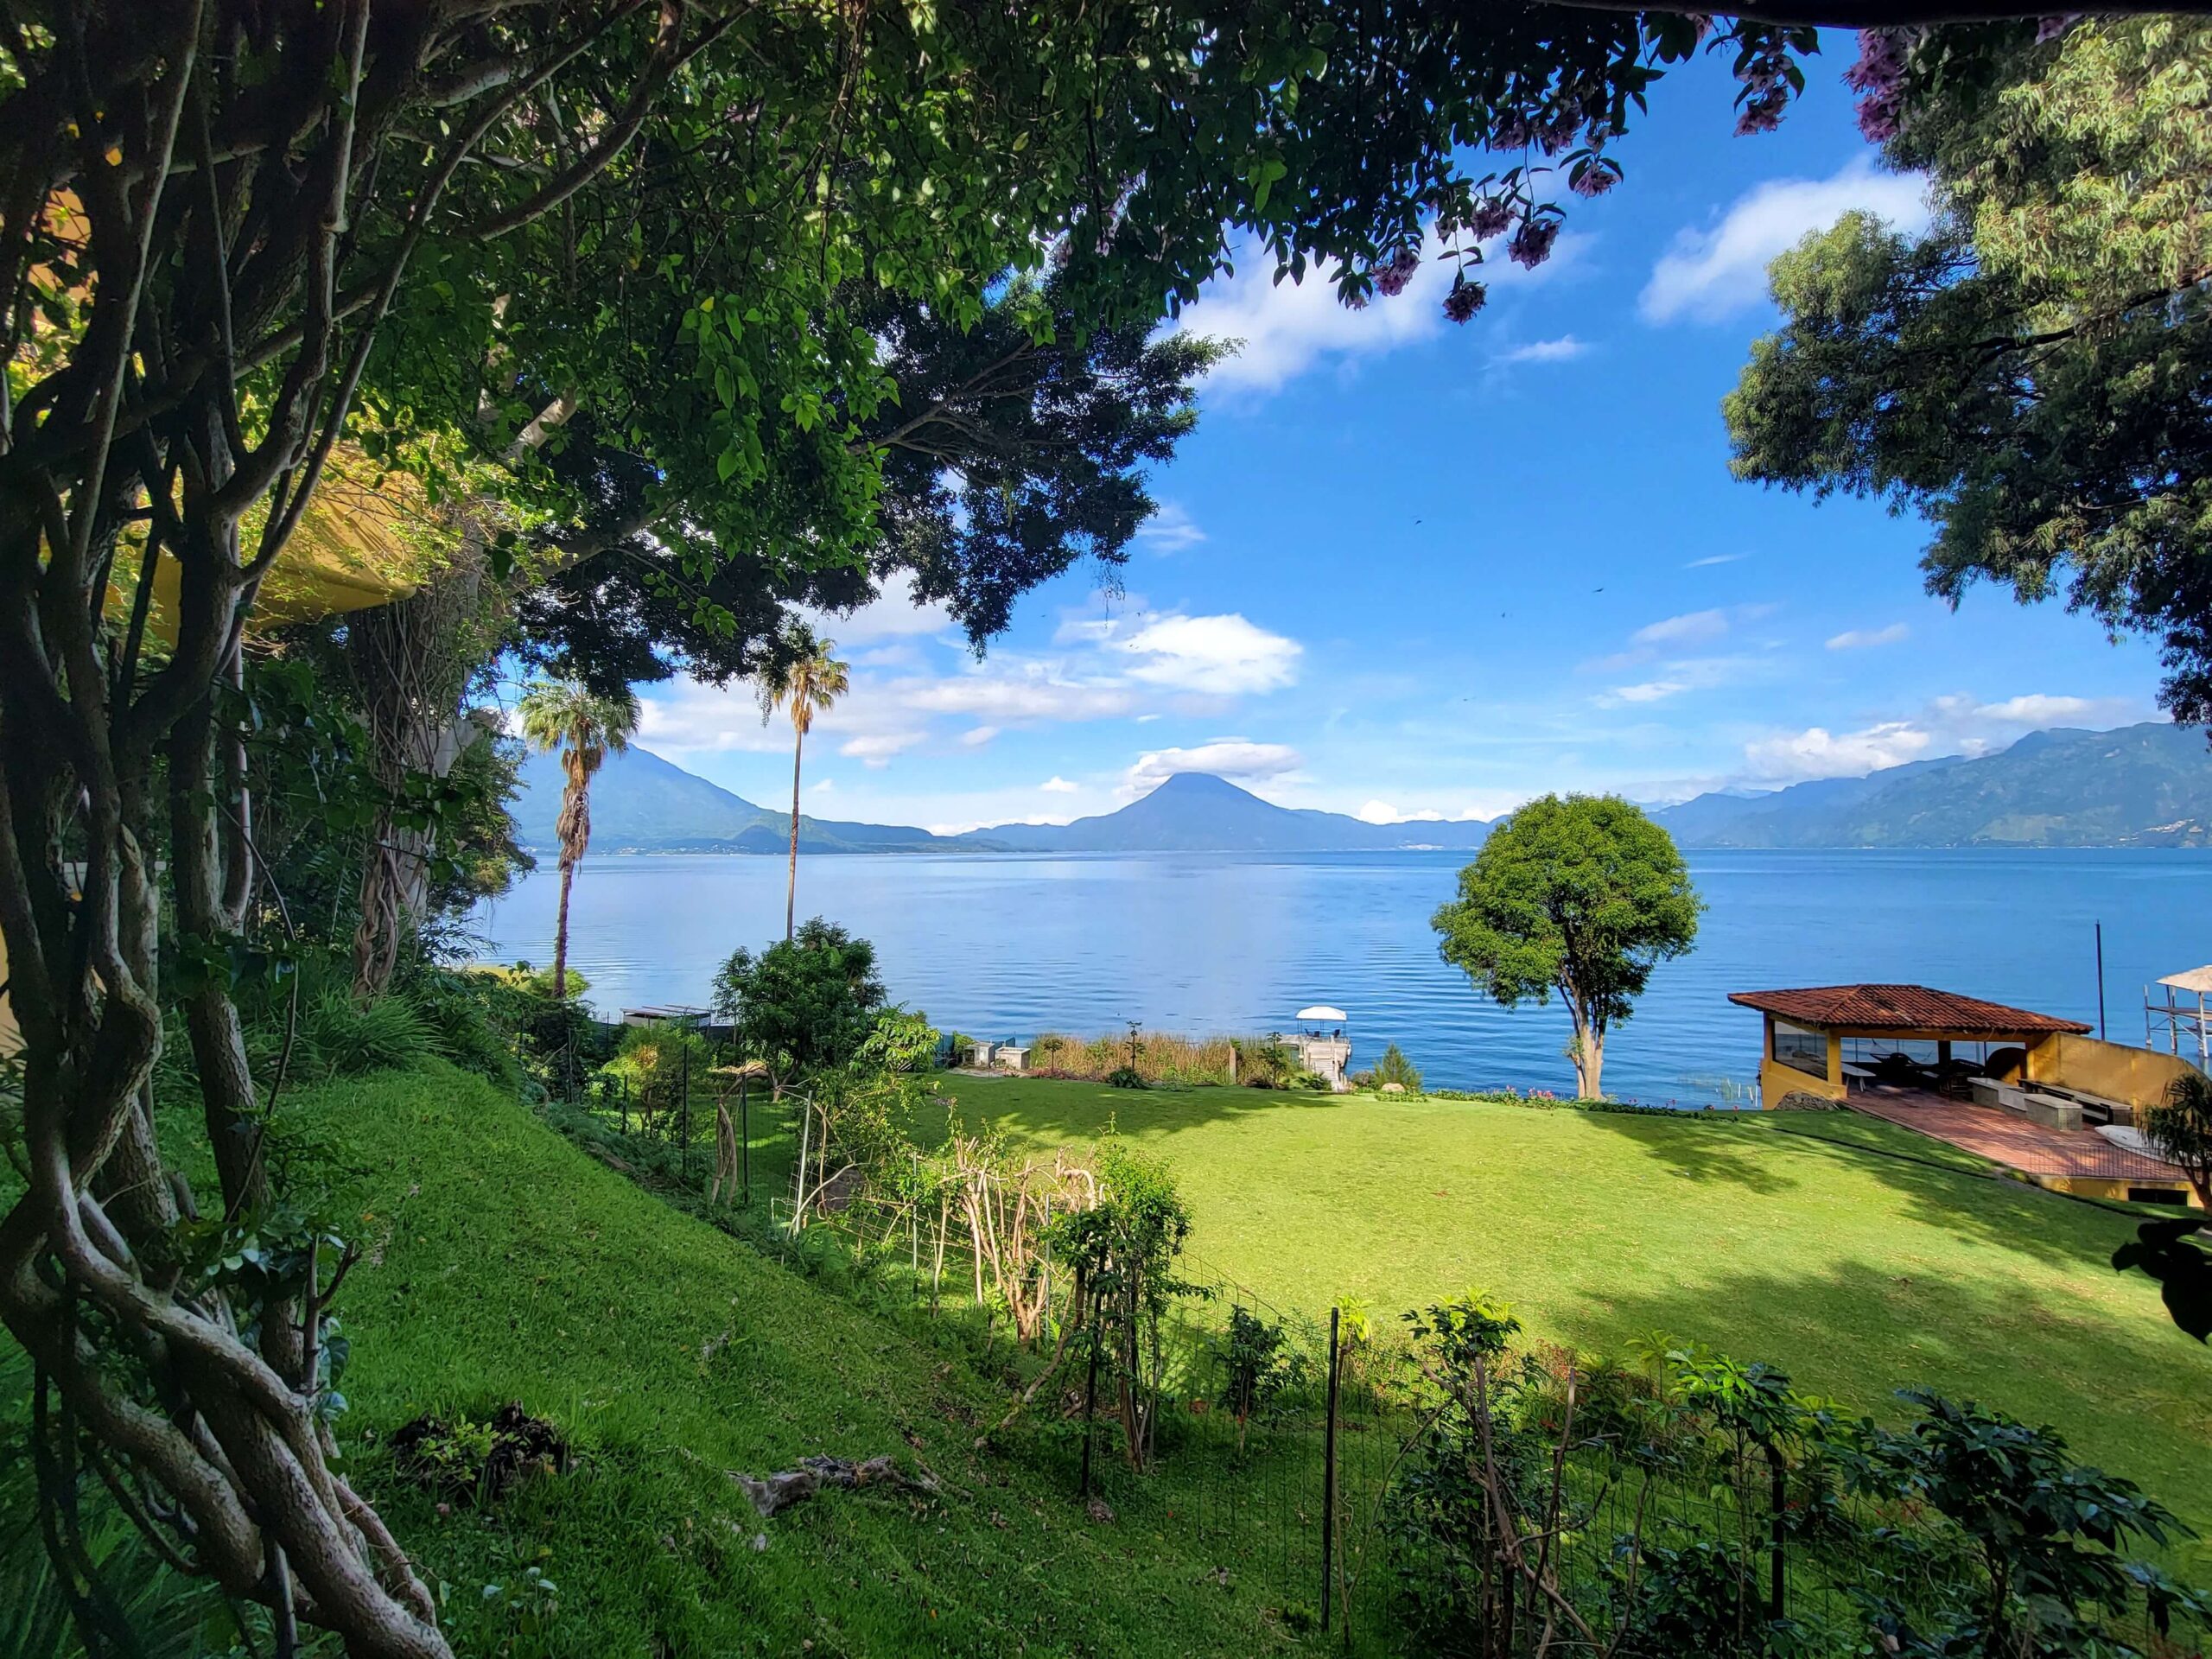 3 Day Travel Guide to Lake Atitlan